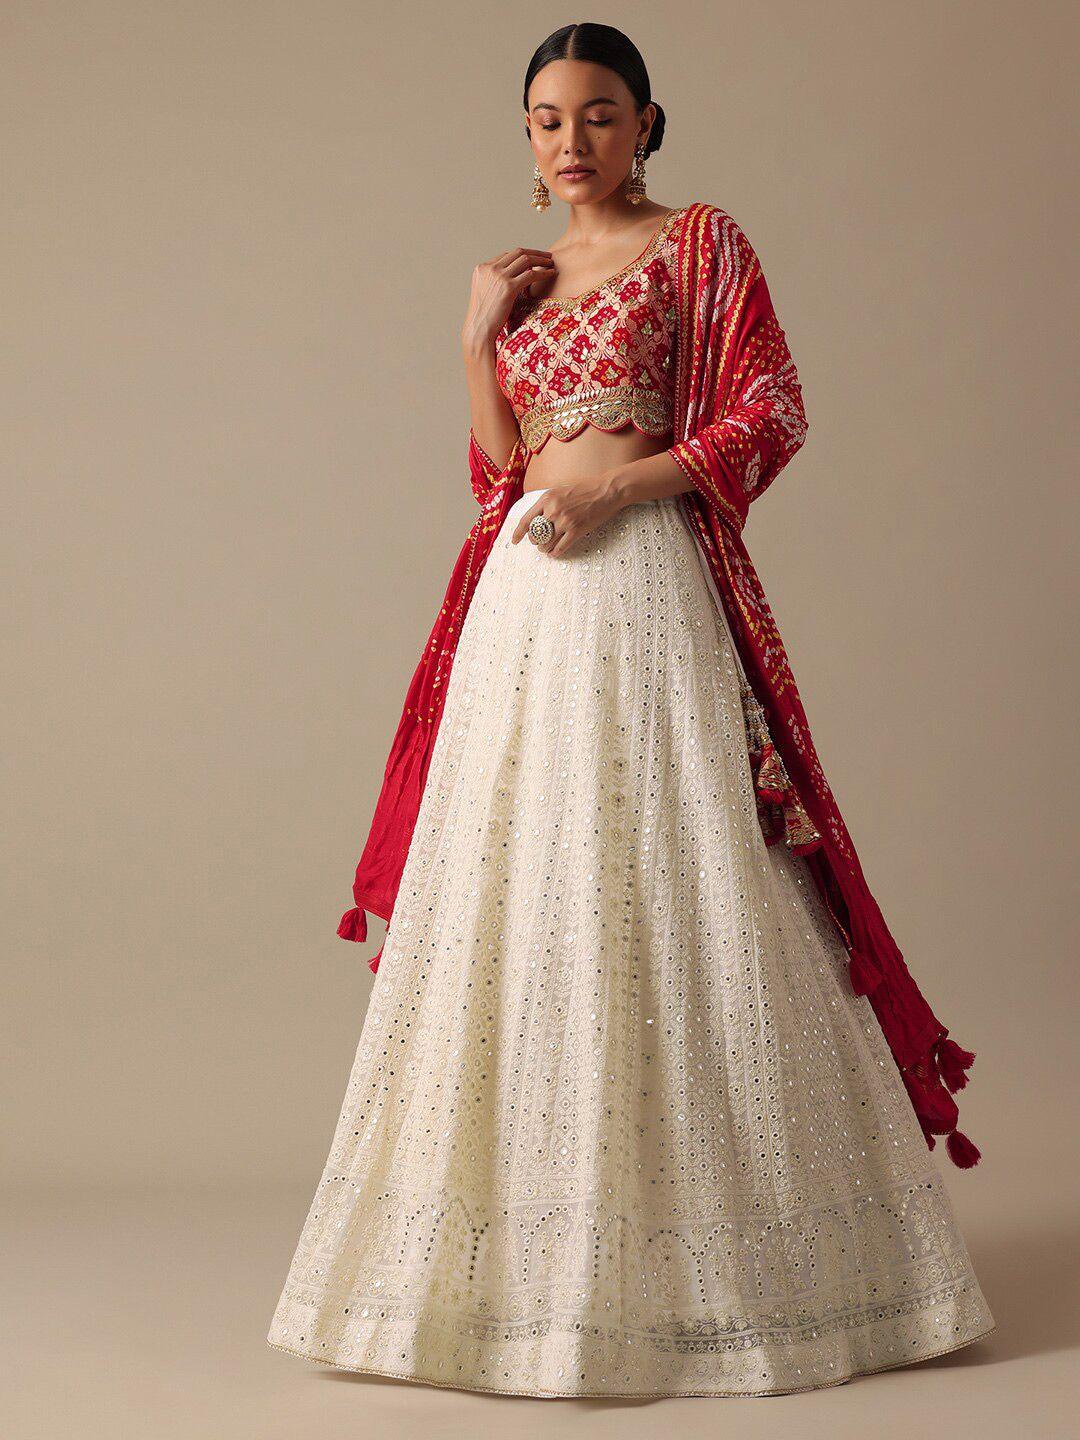 kalki fashion white printed ready to wear lehenga & blouse with dupatta